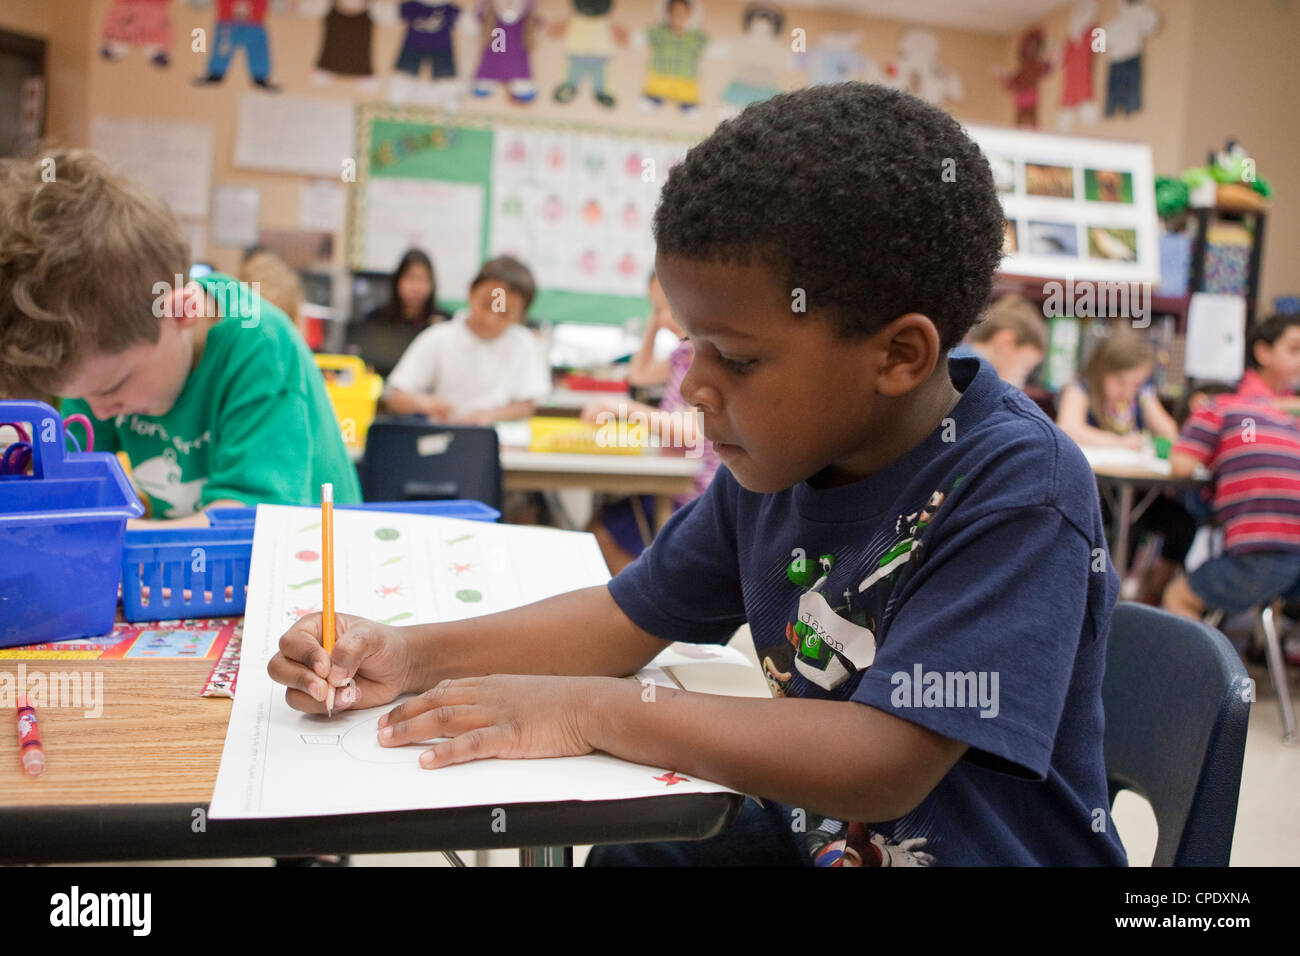 Maschio afro-americano kindergarten studente lavora al suo banco durante le lezioni al Texas pubblico scuola elementare Foto Stock